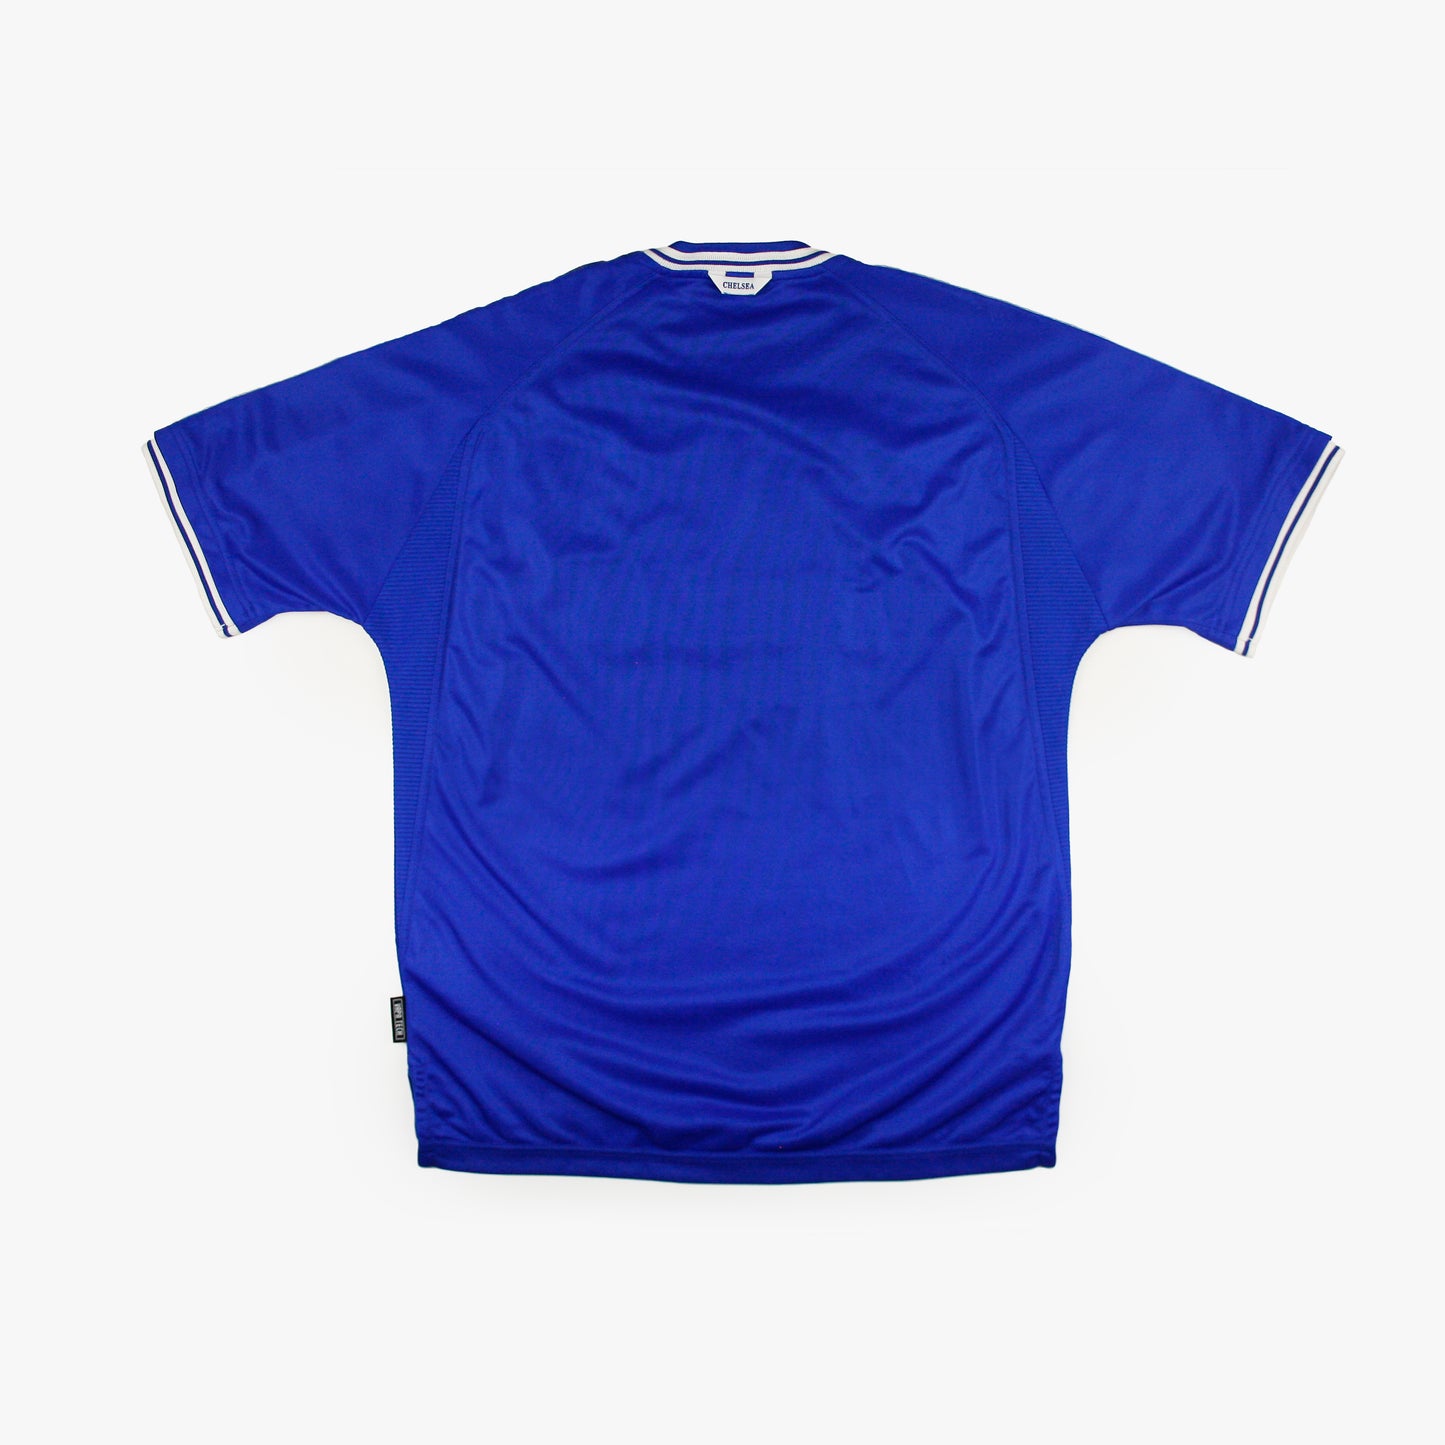 Chelsea 99/01 • Camiseta Local • L